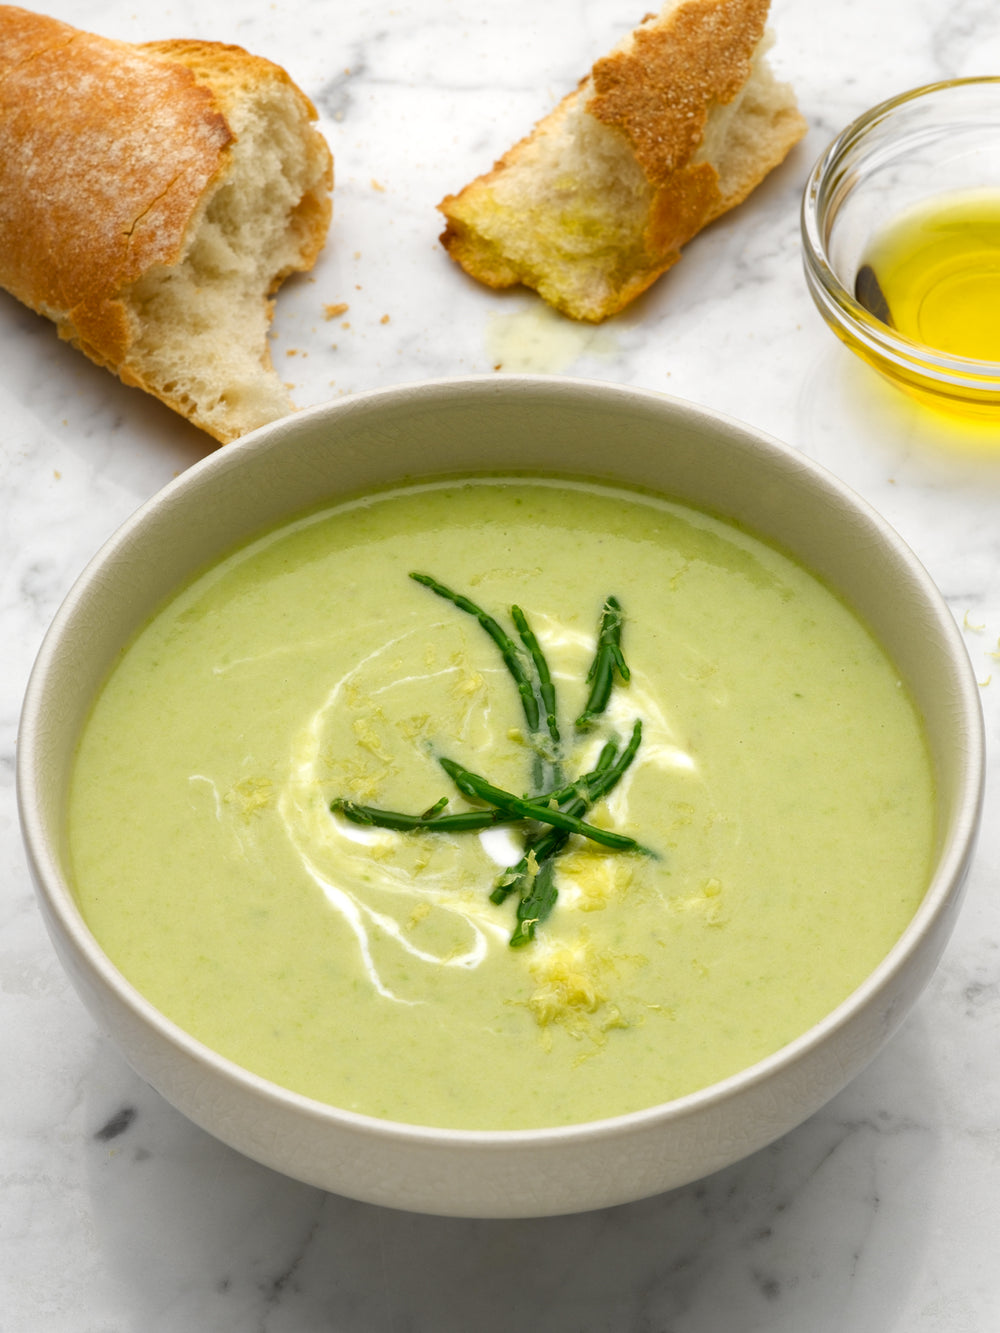 Asparagus vichyssoise soup recipe | Ottolenghi Recipes